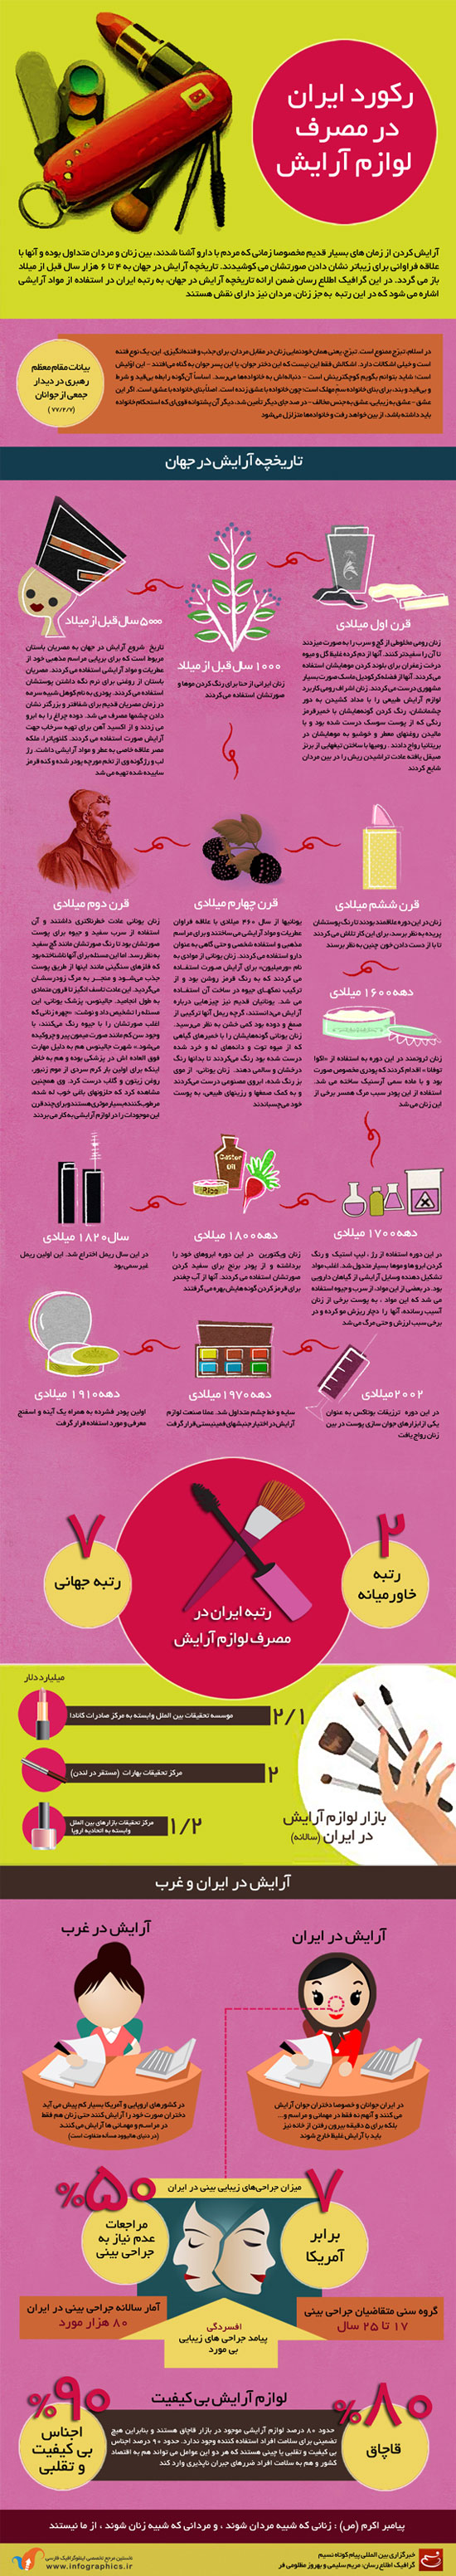 مصرف لوازم آرایش در ایران +اینفوگرافی